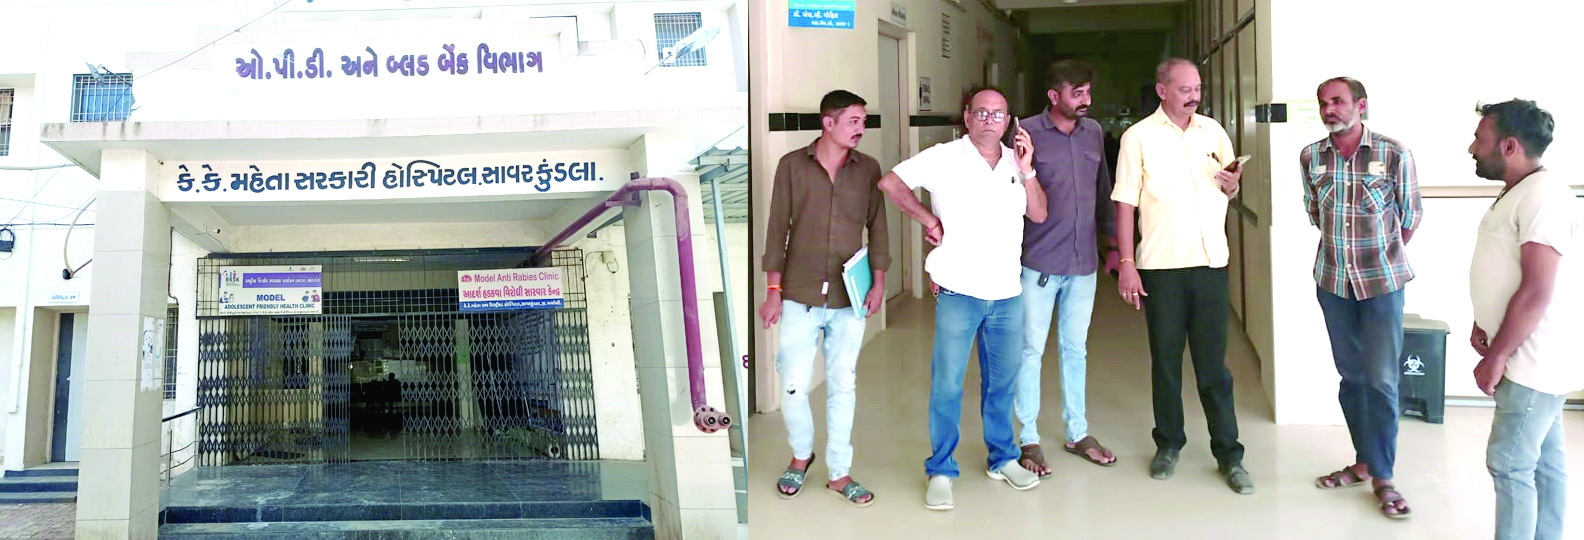 કુંડલાની કે.કે.હોસ્પિટલમાં ફાયર સિસ્ટમ બંધ : નોટીસ અપાઇ